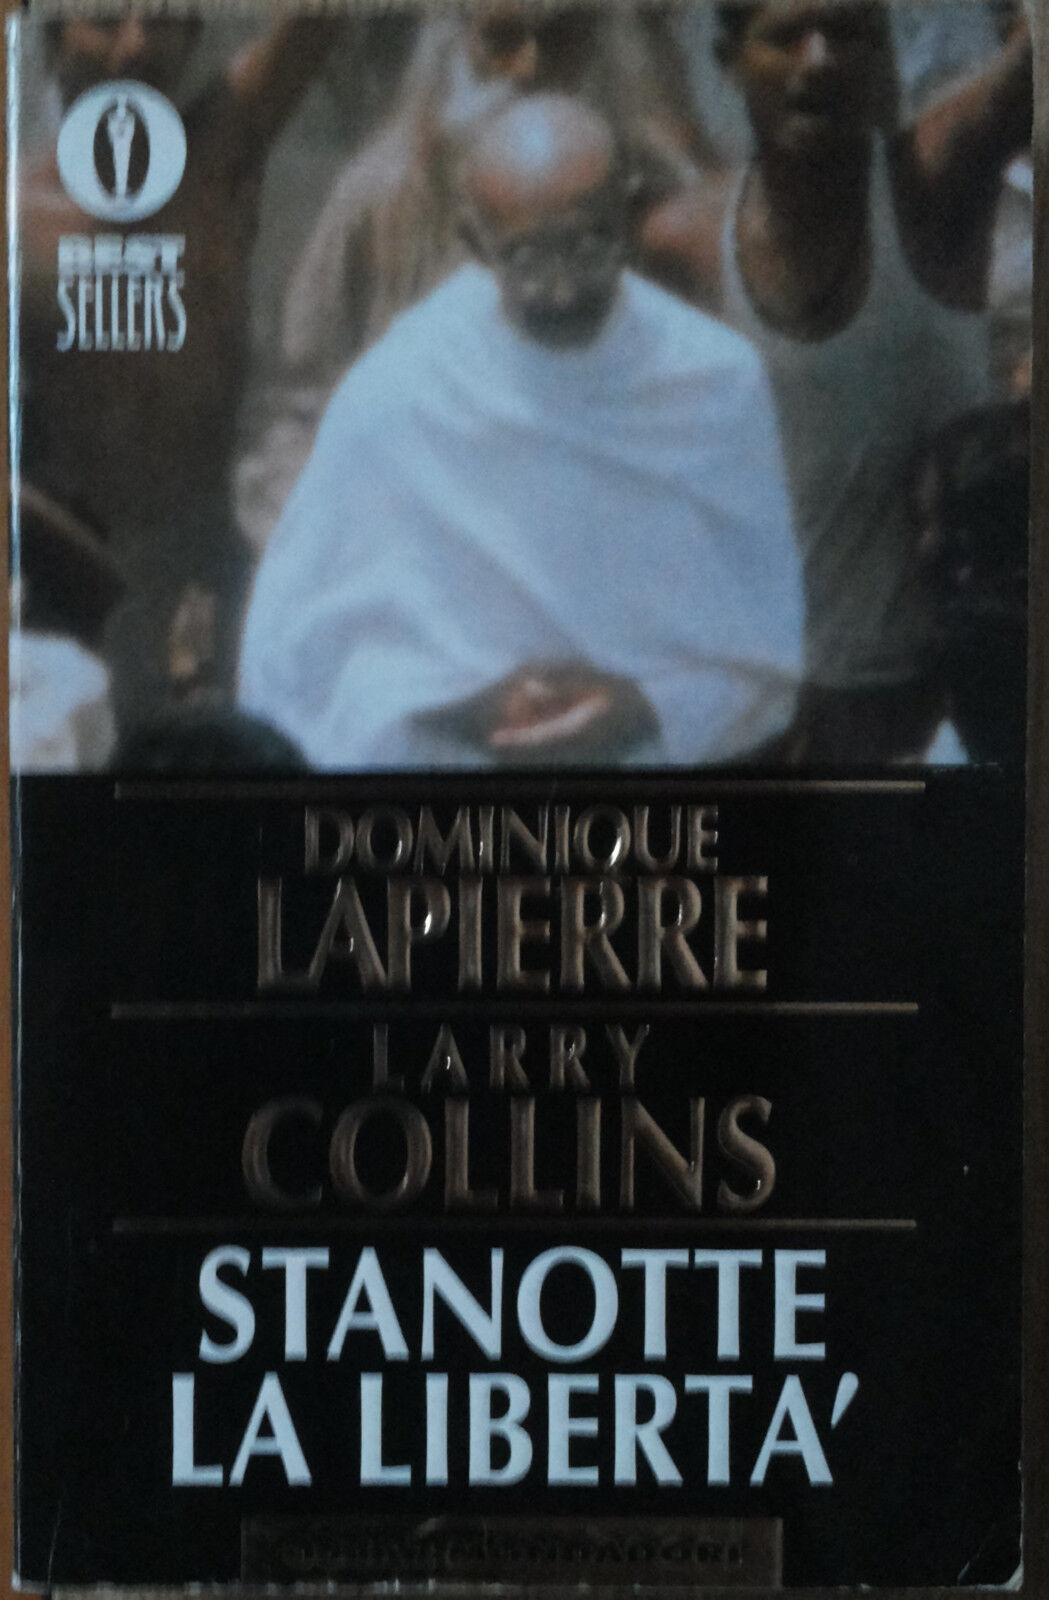 Stanotte la libert? - Lapierre & Collins - Oscar Mondadori,1989 - R